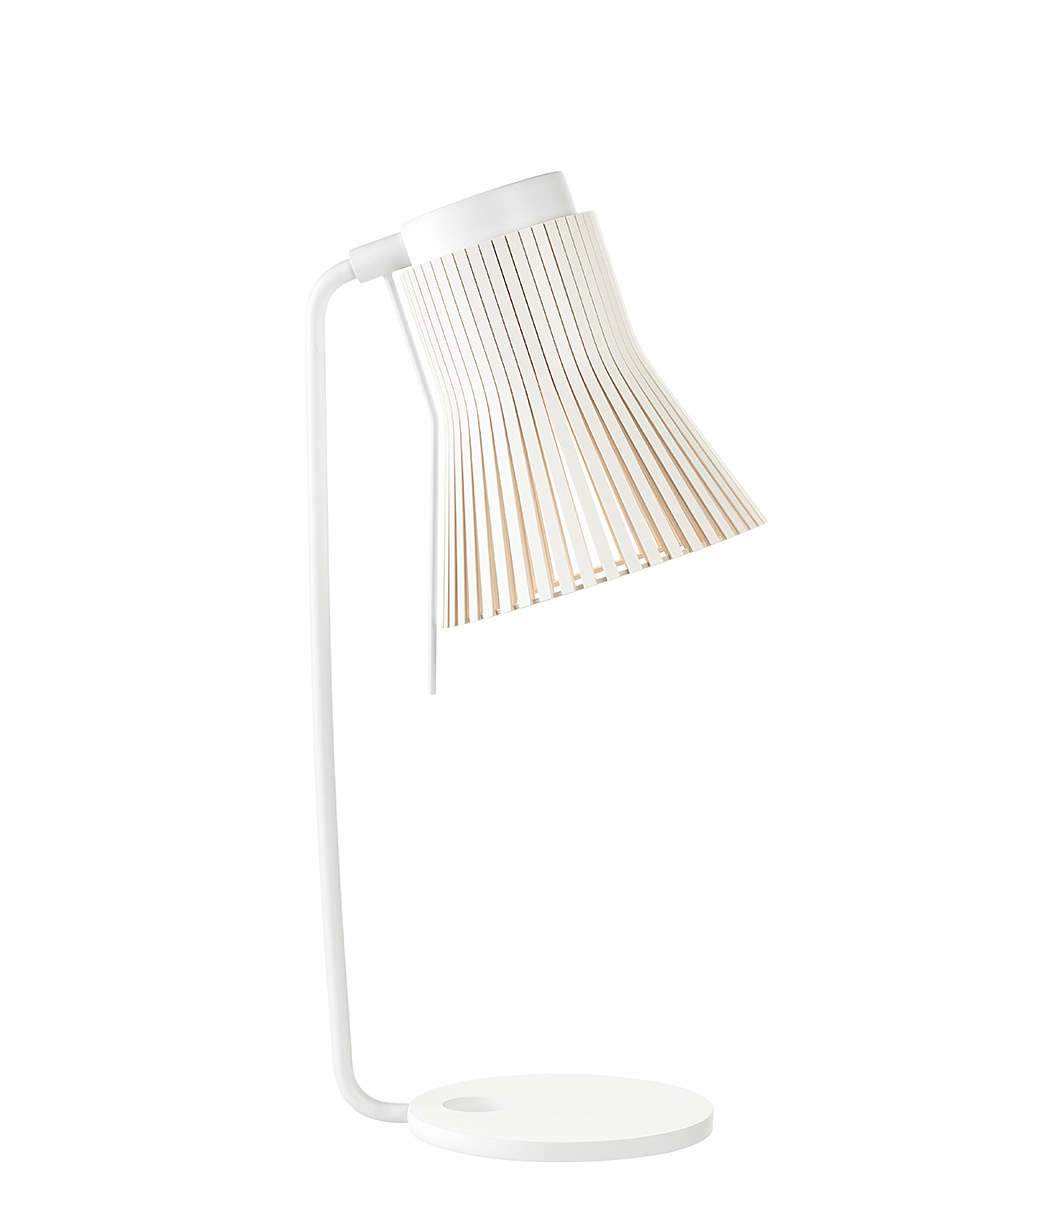 Lampe de table Petite 4620 est disponible en stratifié blanc